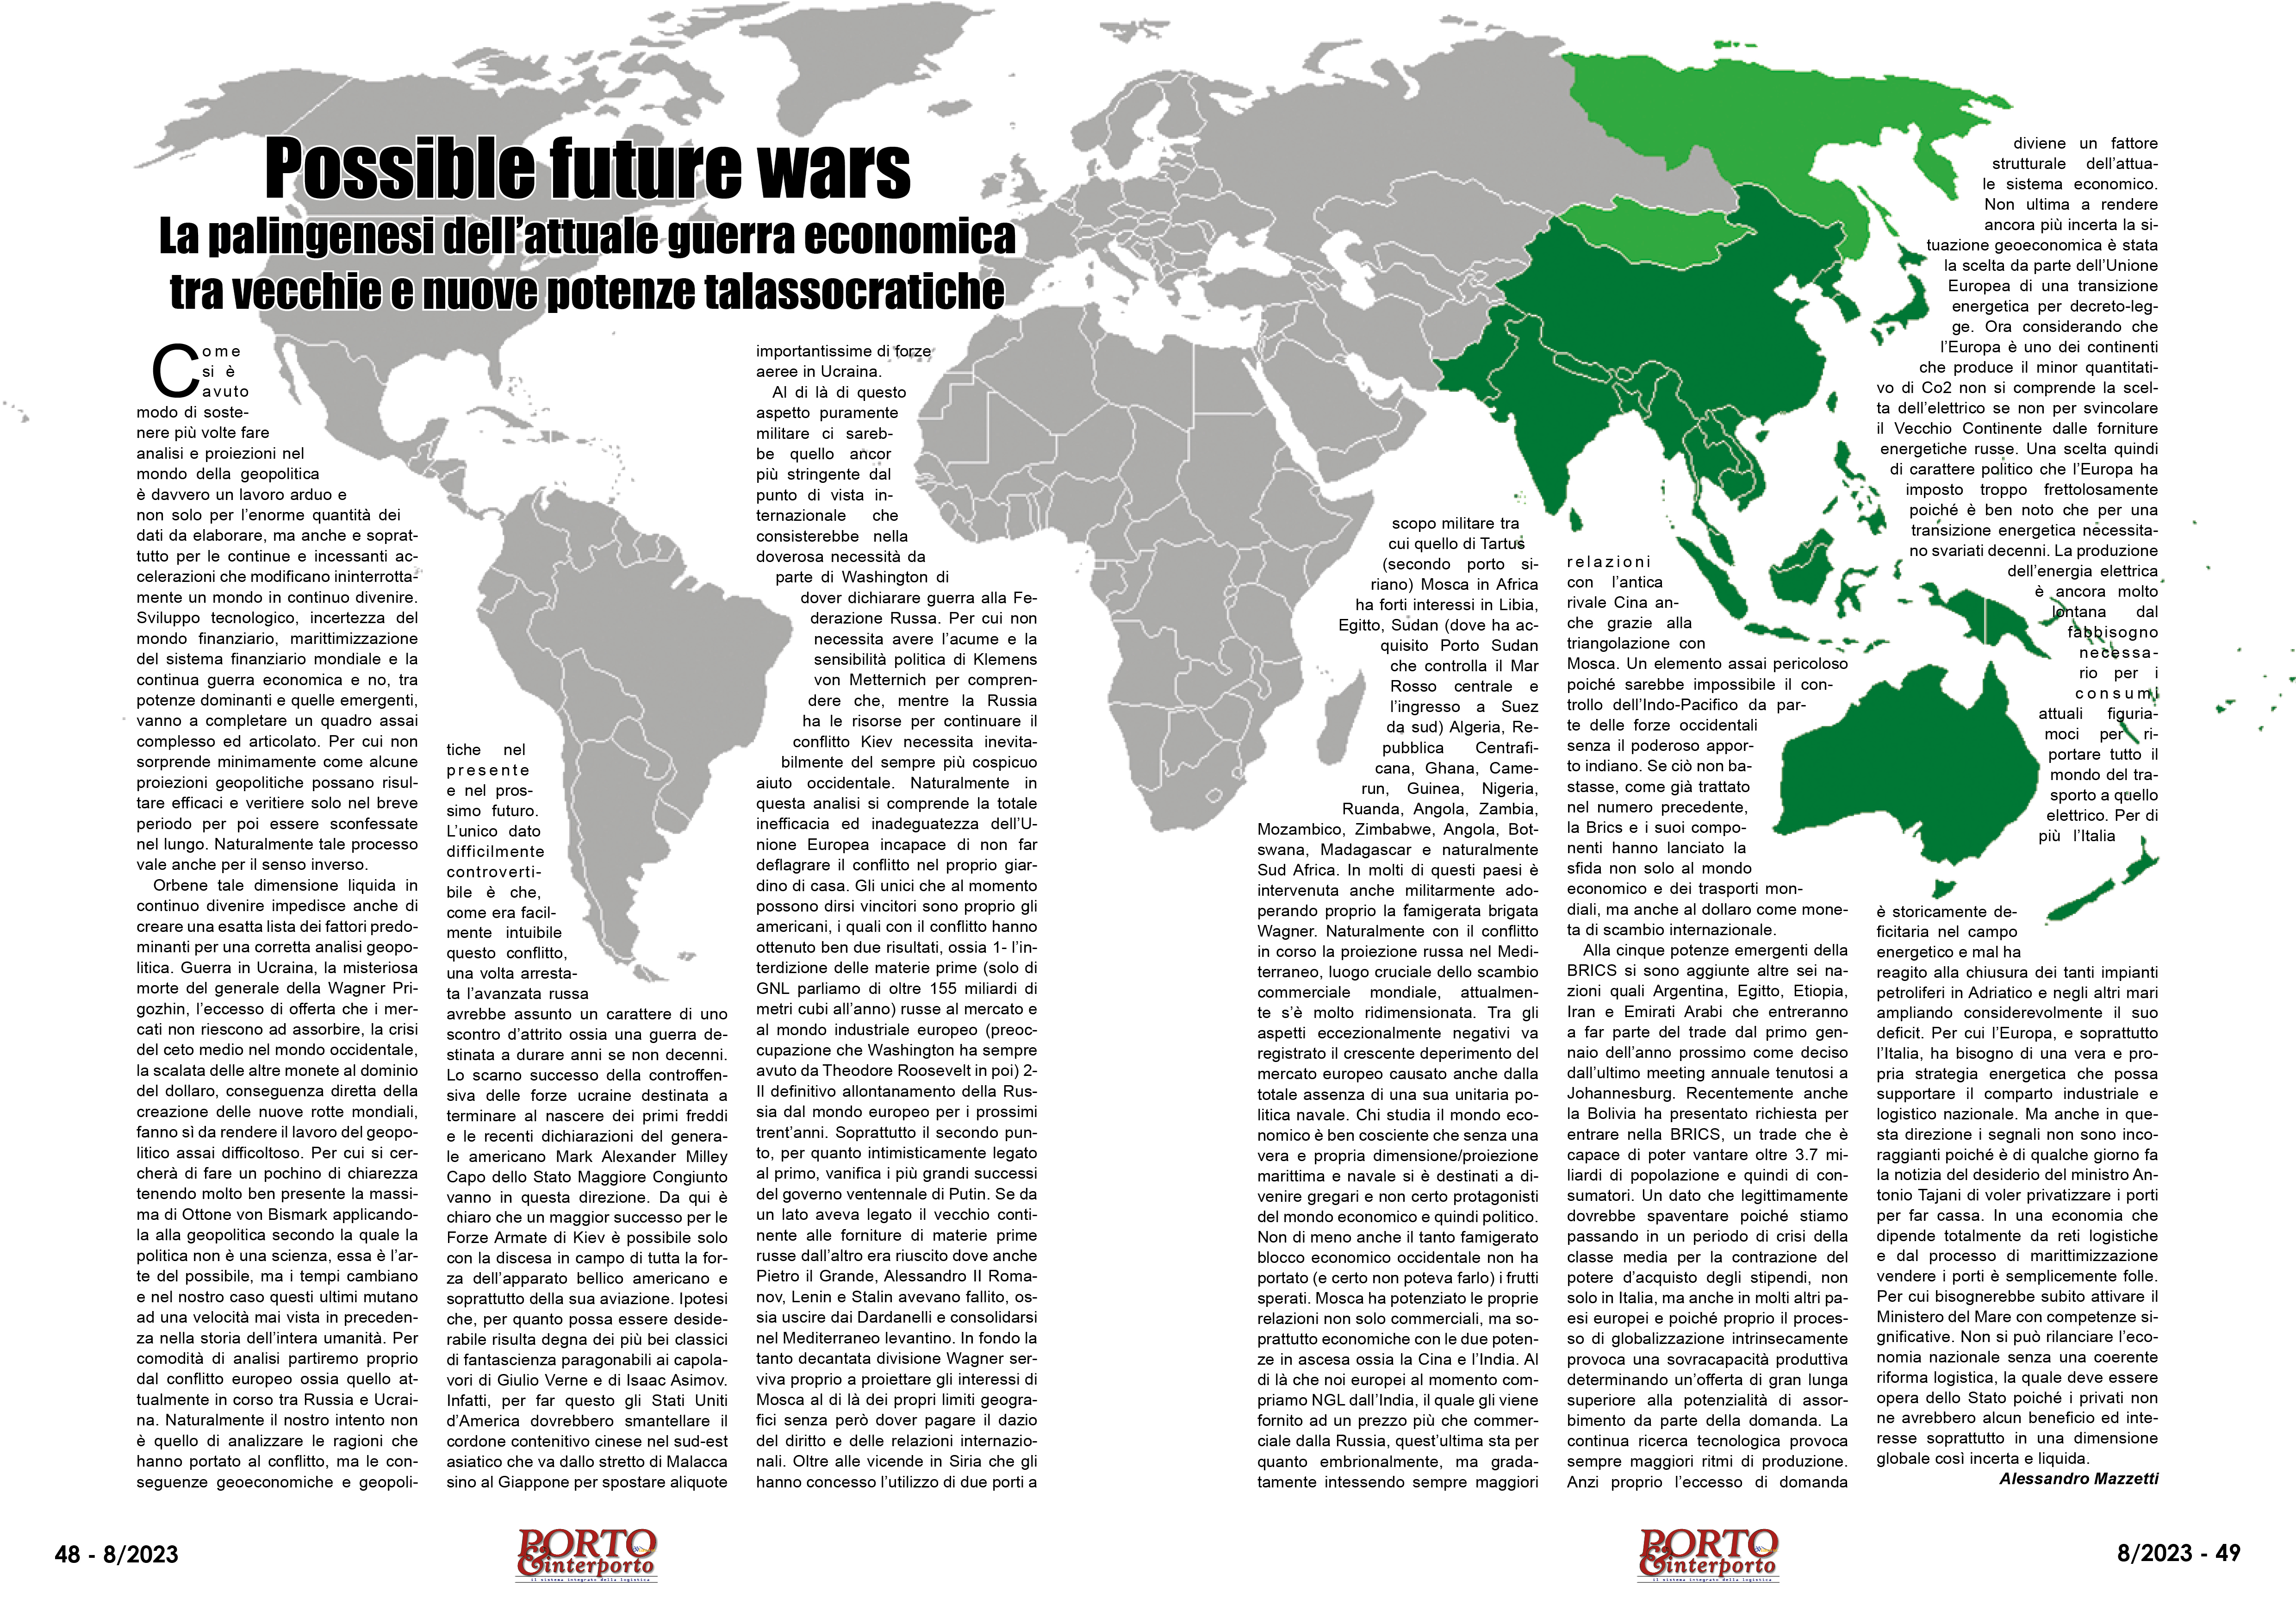 AGOSTO 2023 PAG. 48 - Possible future wars La palingenesi dell’attuale guerra economica tra vecchie e nuove potenze talassocratiche